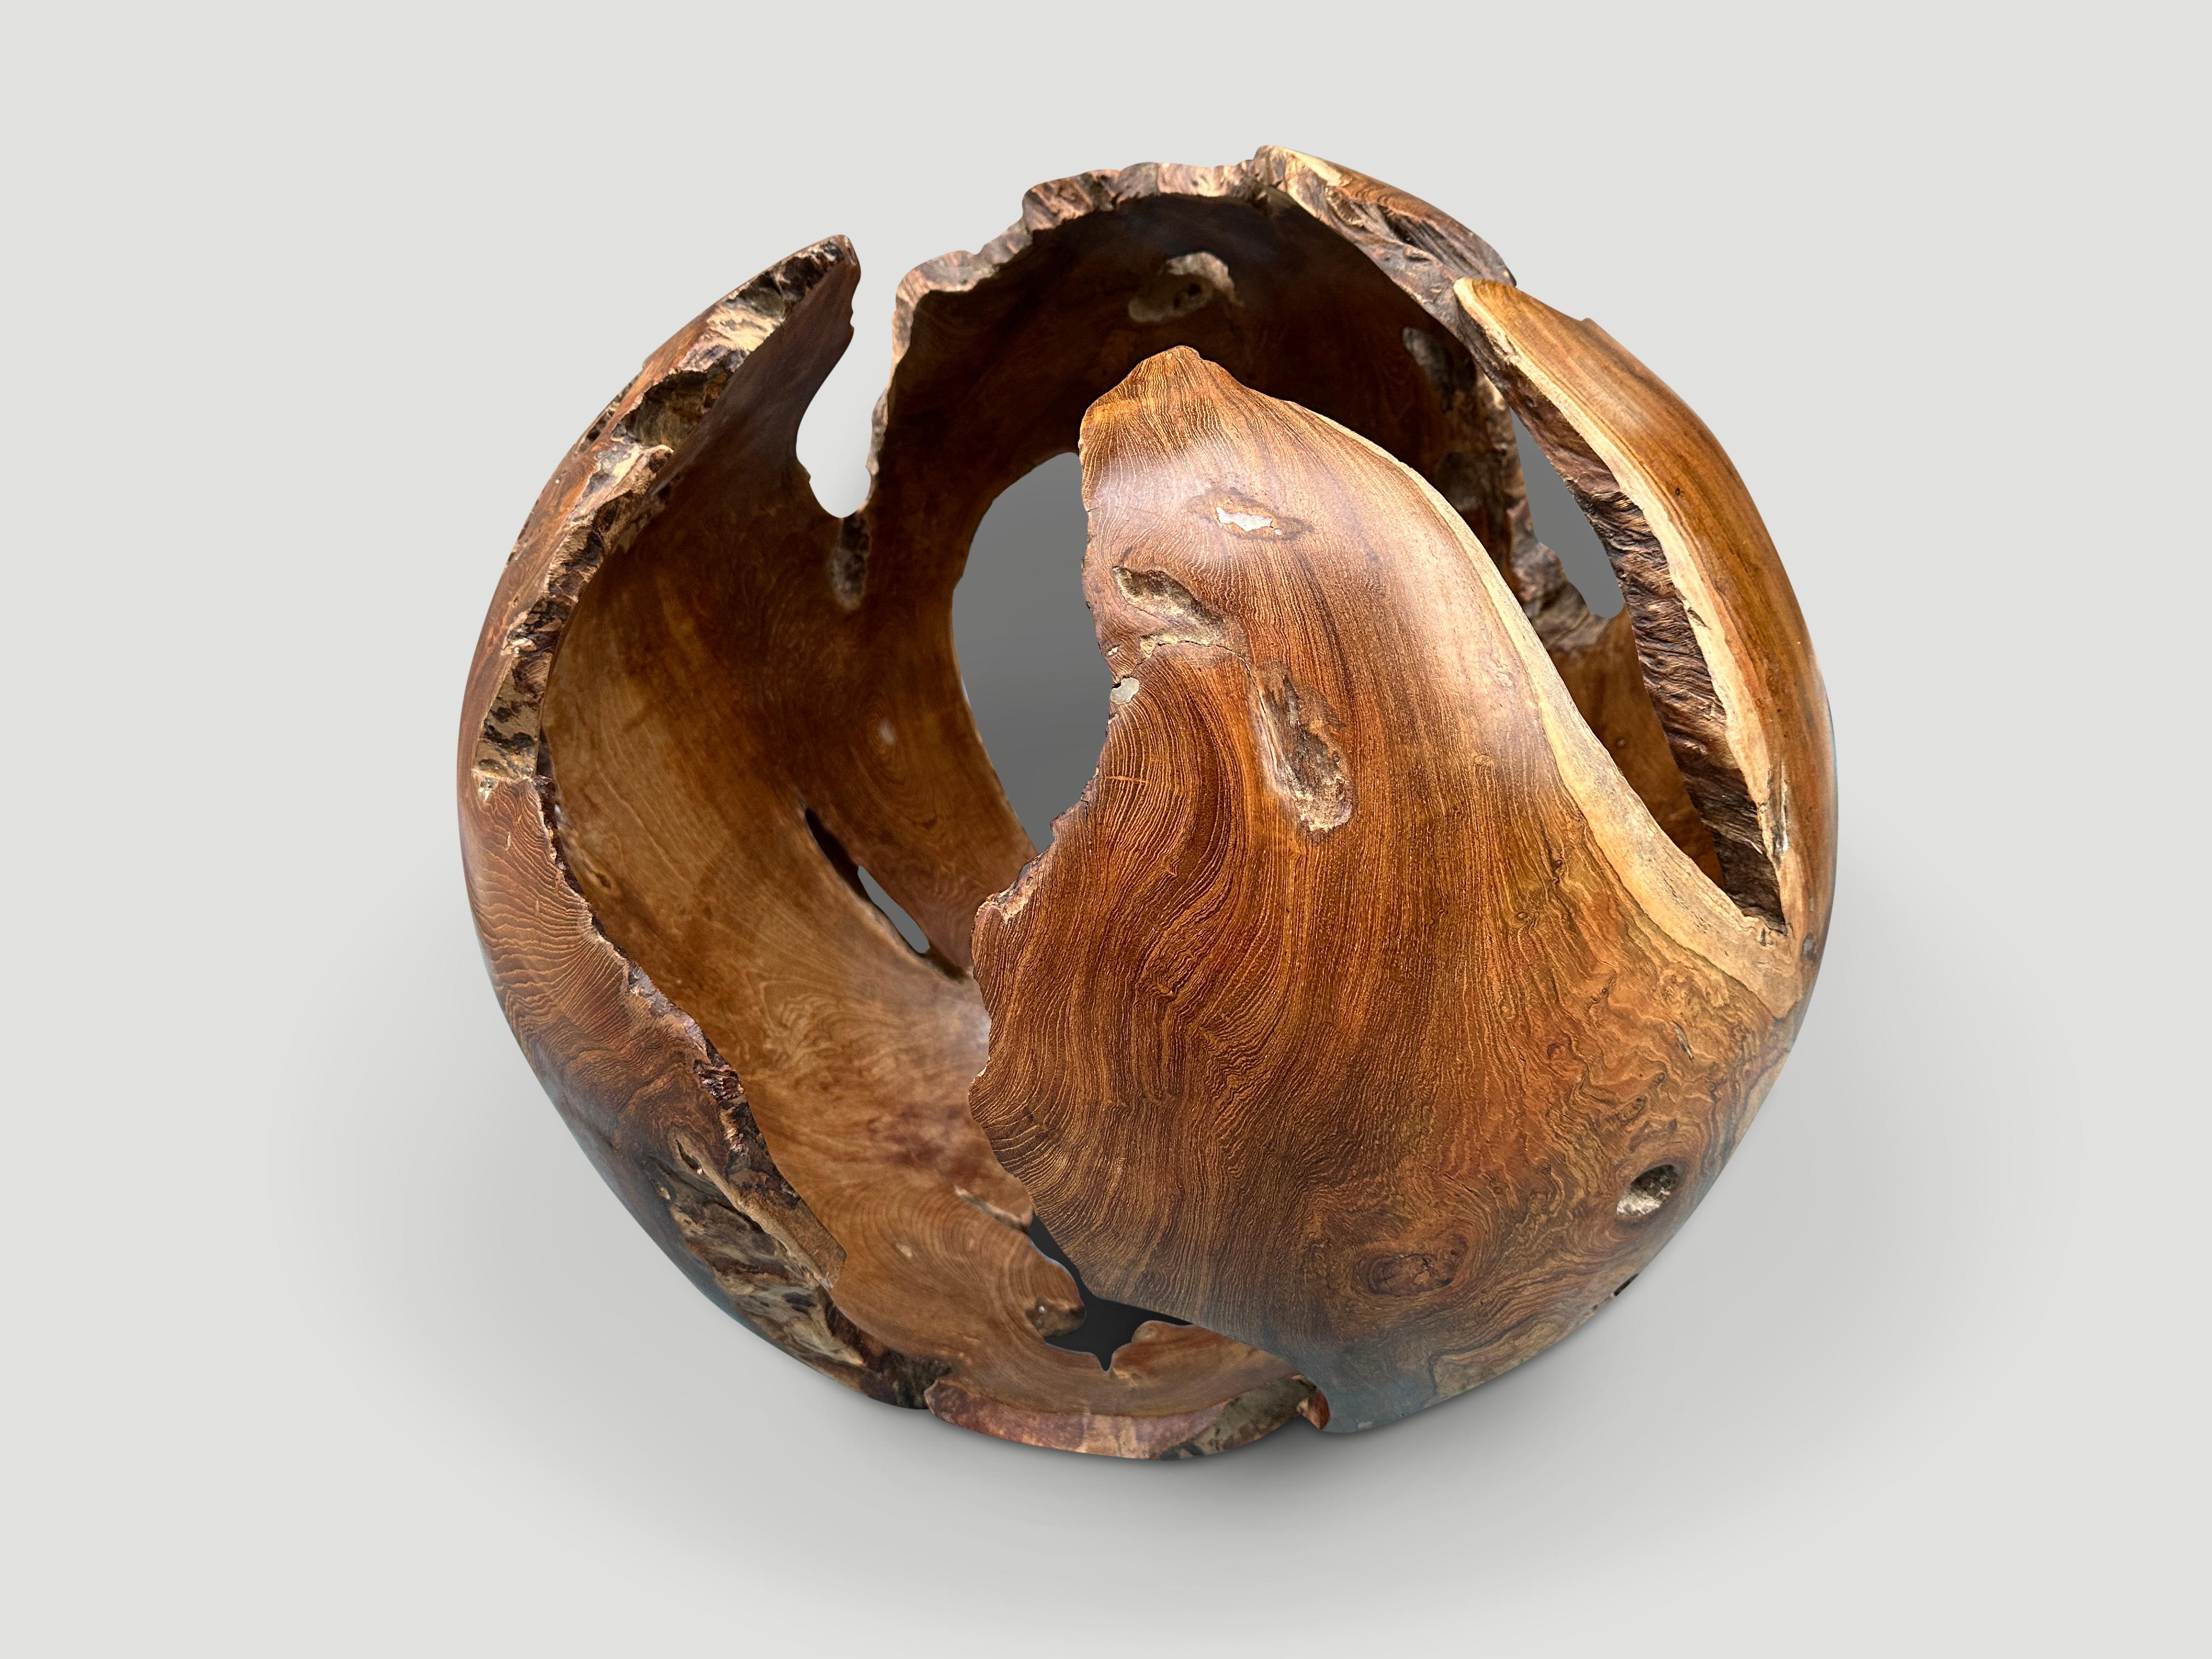 Beeindruckende ausgehöhlte skulpturale Kugel. Mit einem natürlichen Öl behandelt, das die schöne Holzmaserung zum Vorschein bringt. Diese organische Skulptur steht stabil auf beiden Seiten.

Diese Skulptur wurde im Geiste von Wabi-Sabi, einer